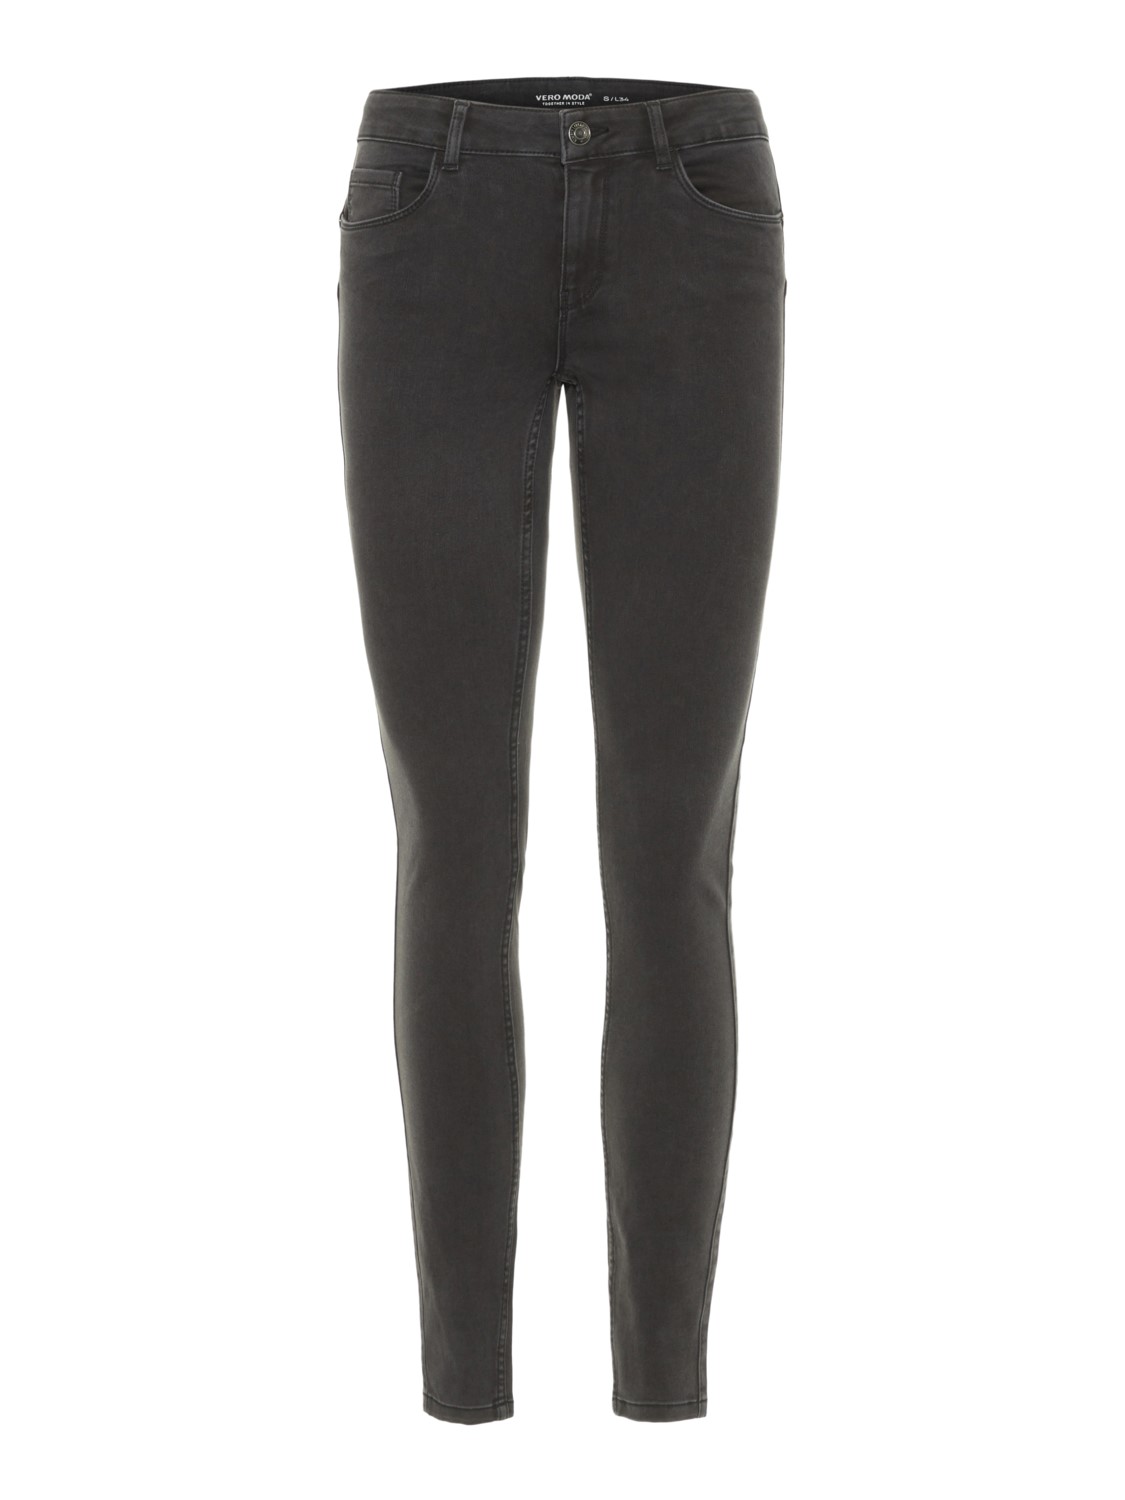 Vero Moda Damen Jeans VMSEVEN NW S SHAPE UP JEANS VI501 - Skinny Fit - Grau - Dark Grey Denim